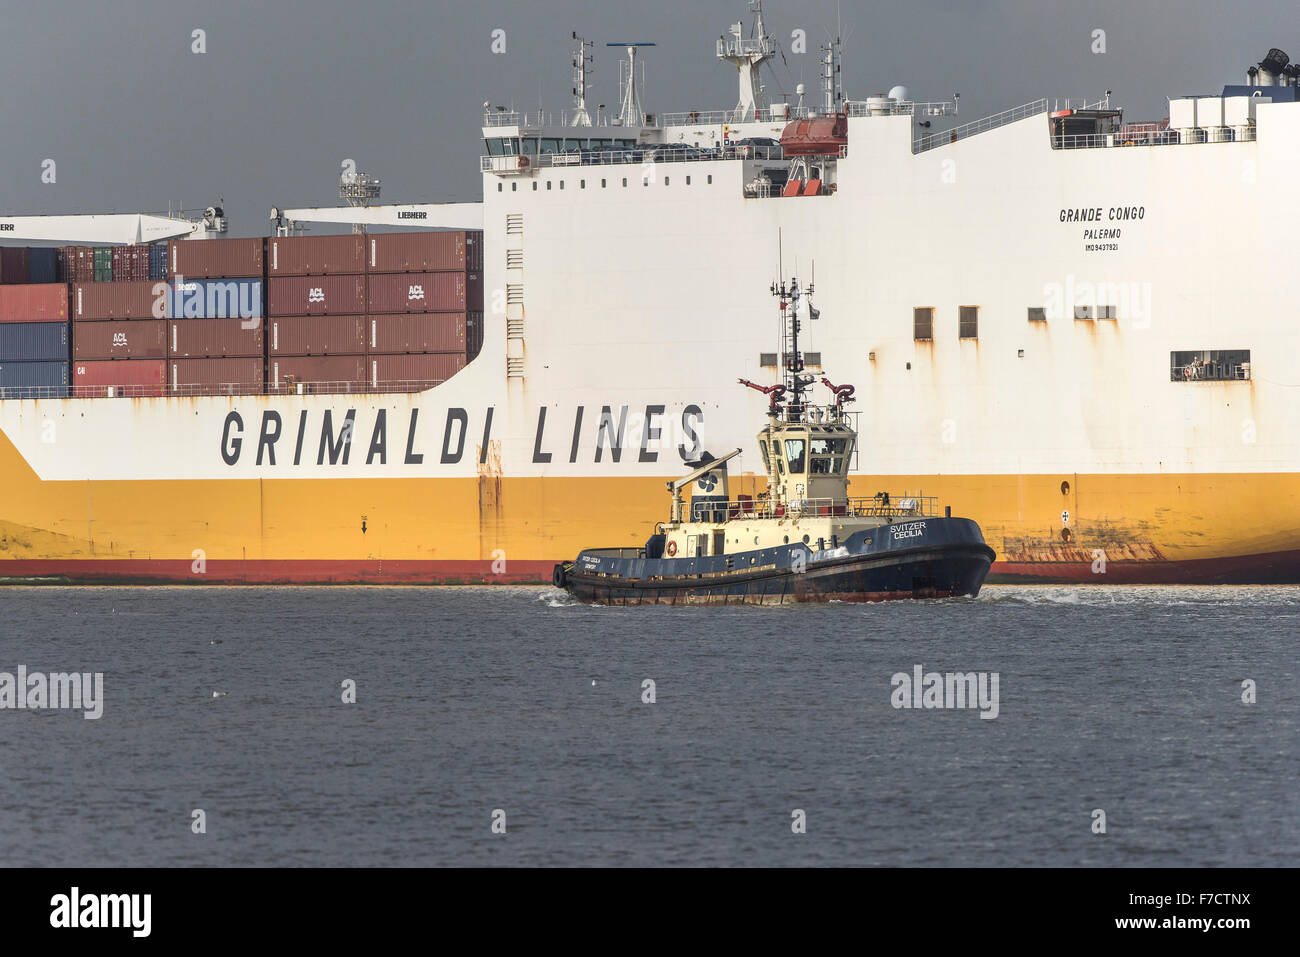 Der Schlepper, die Svitzer Cecilia in den Schatten gestellt durch die großen Containerladung ist Schiff Grande Kongo, wie sie flussaufwärts auf der Themse dampft. Stockfoto